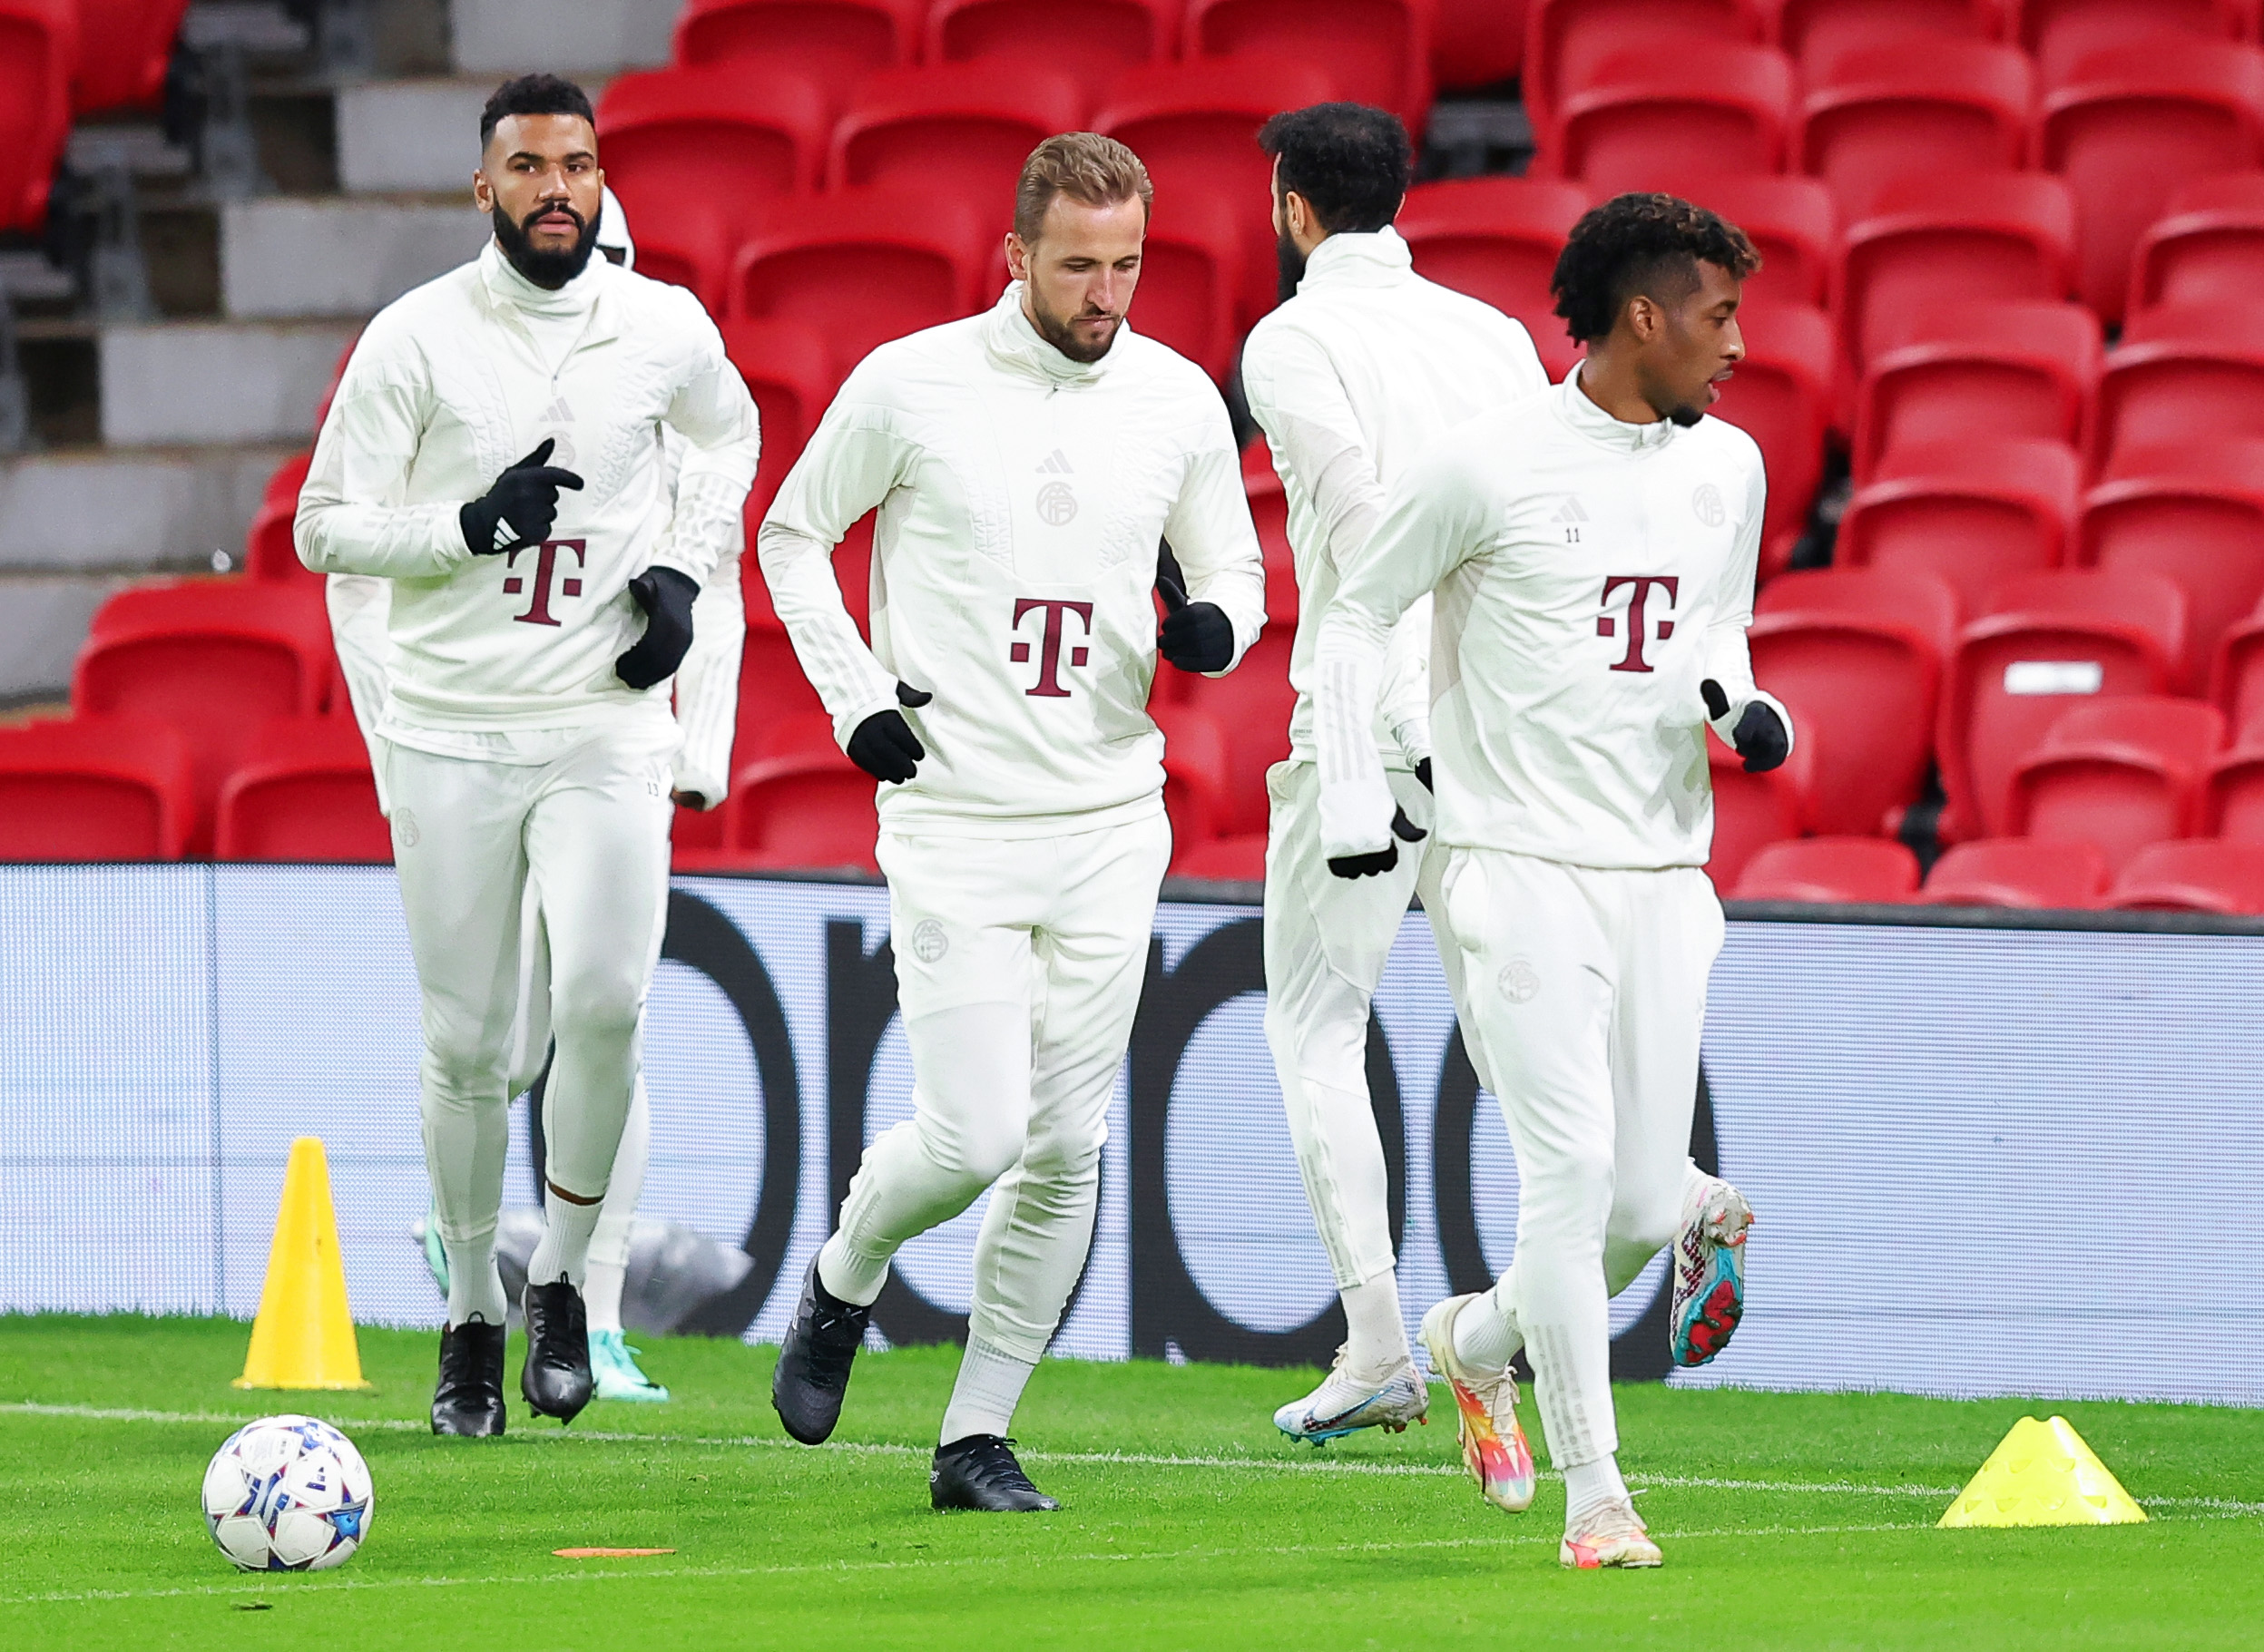 Für das Training waren die deutschen Spitzenklubs ganz in Weiß gekleidet